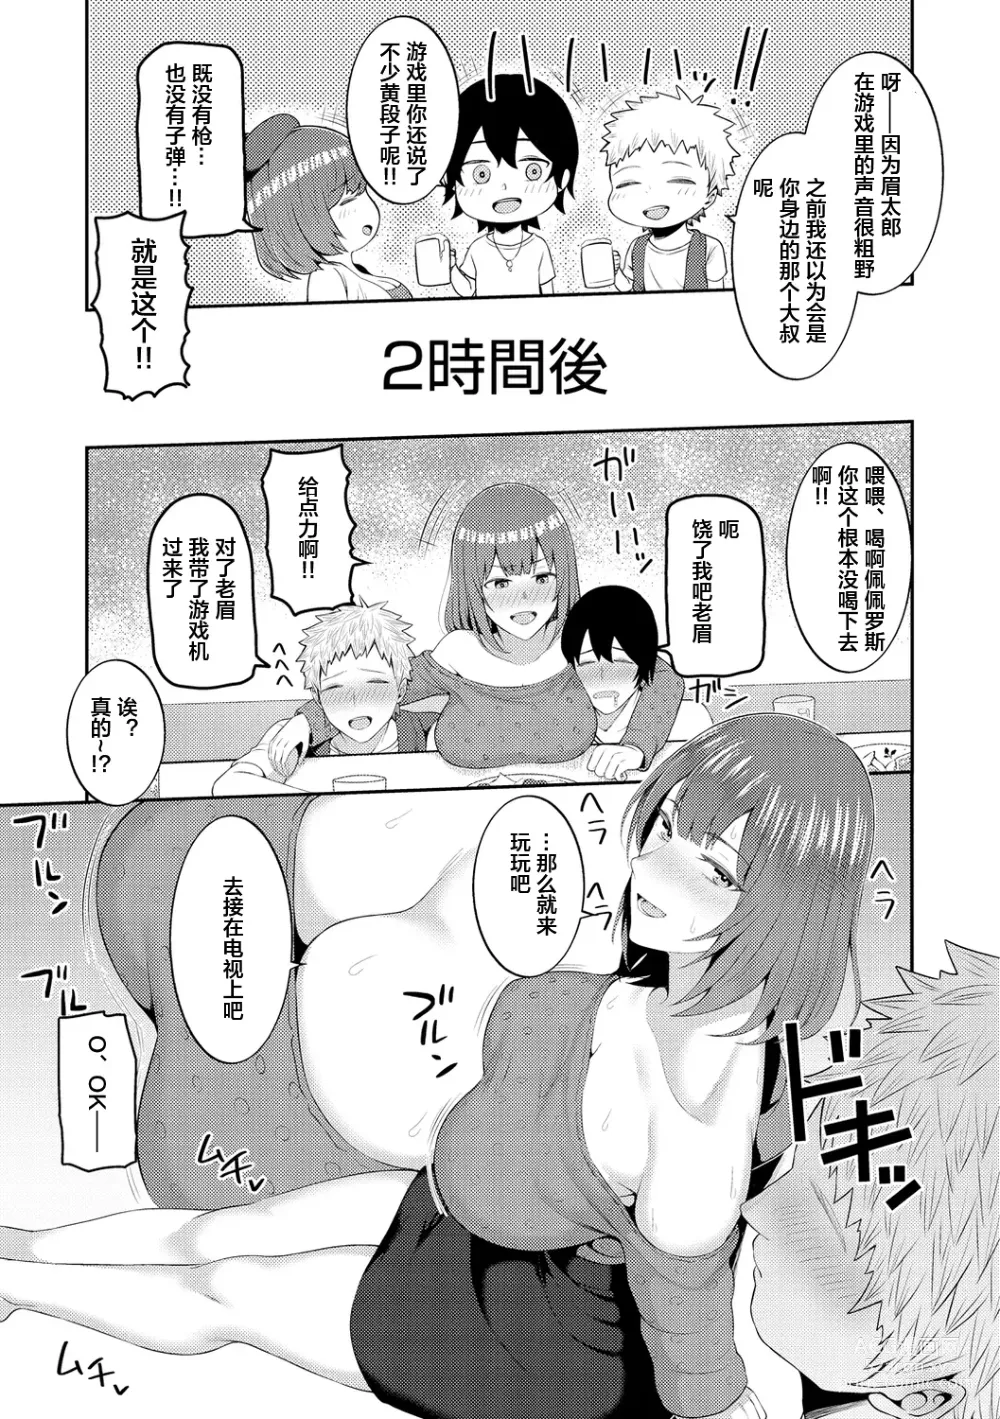 Page 140 of manga Amaete Hoshii no - I want you to spoil me